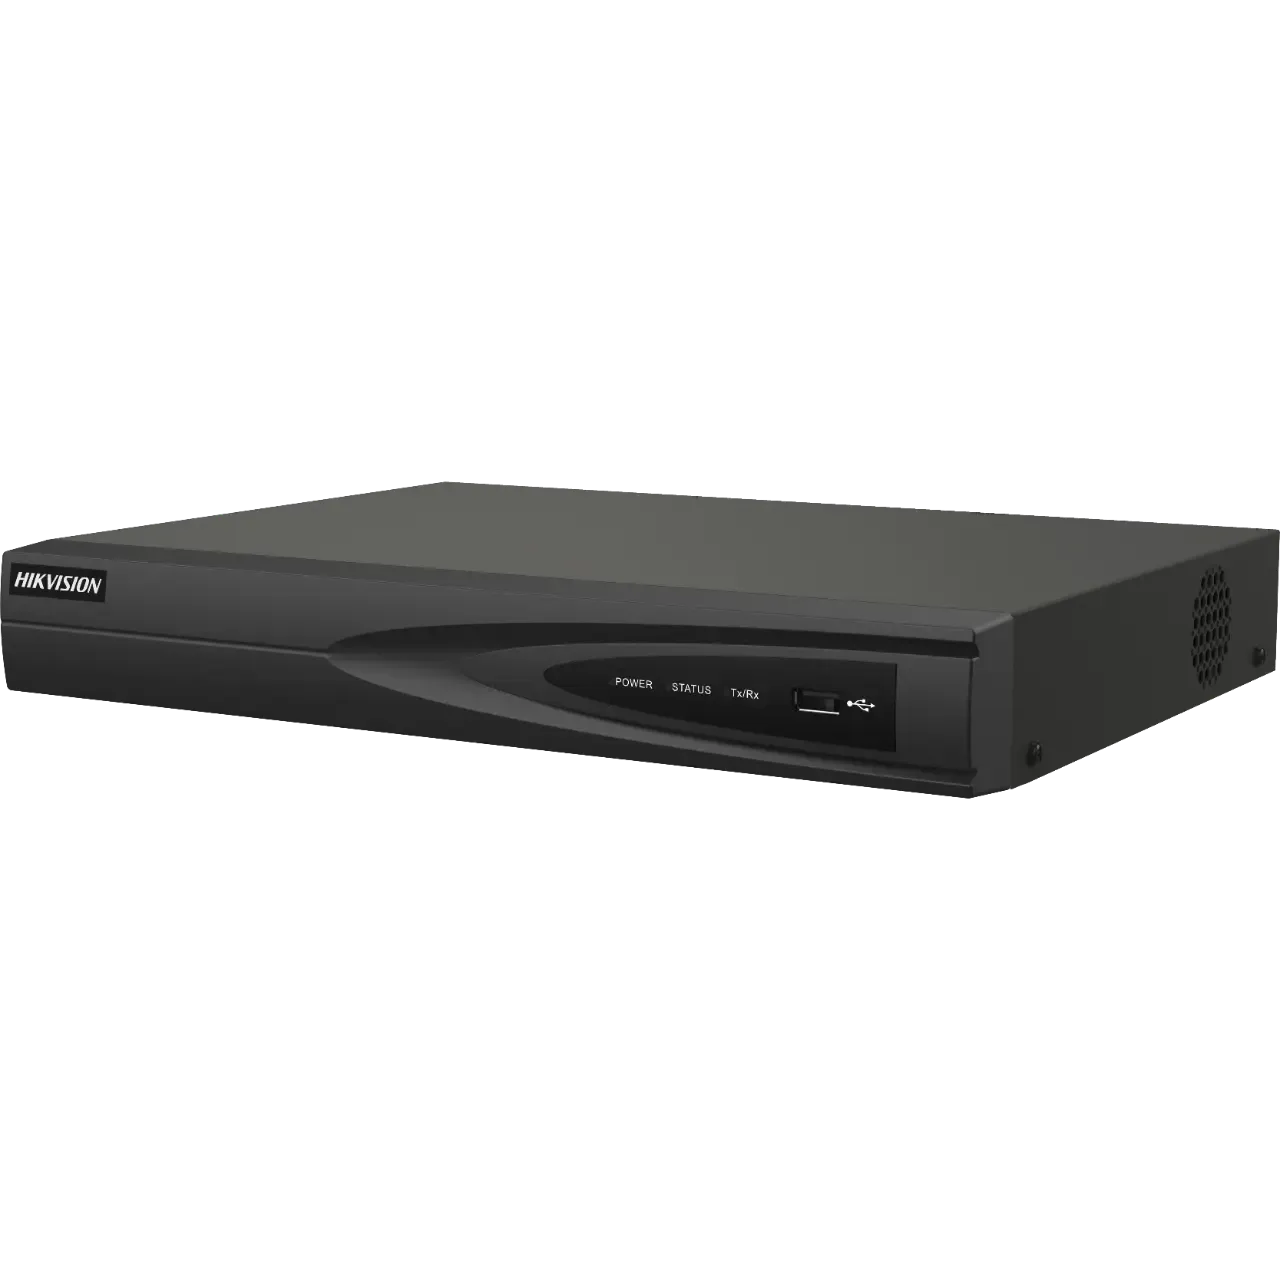 NVR 8 Megapixel (4K) (Compatible con Cámaras ACUSENSE) / 4 canales IP / 4 Puertos PoE+ / 1 Bahía de Disco Duro / Salida de Vídeo en 4K